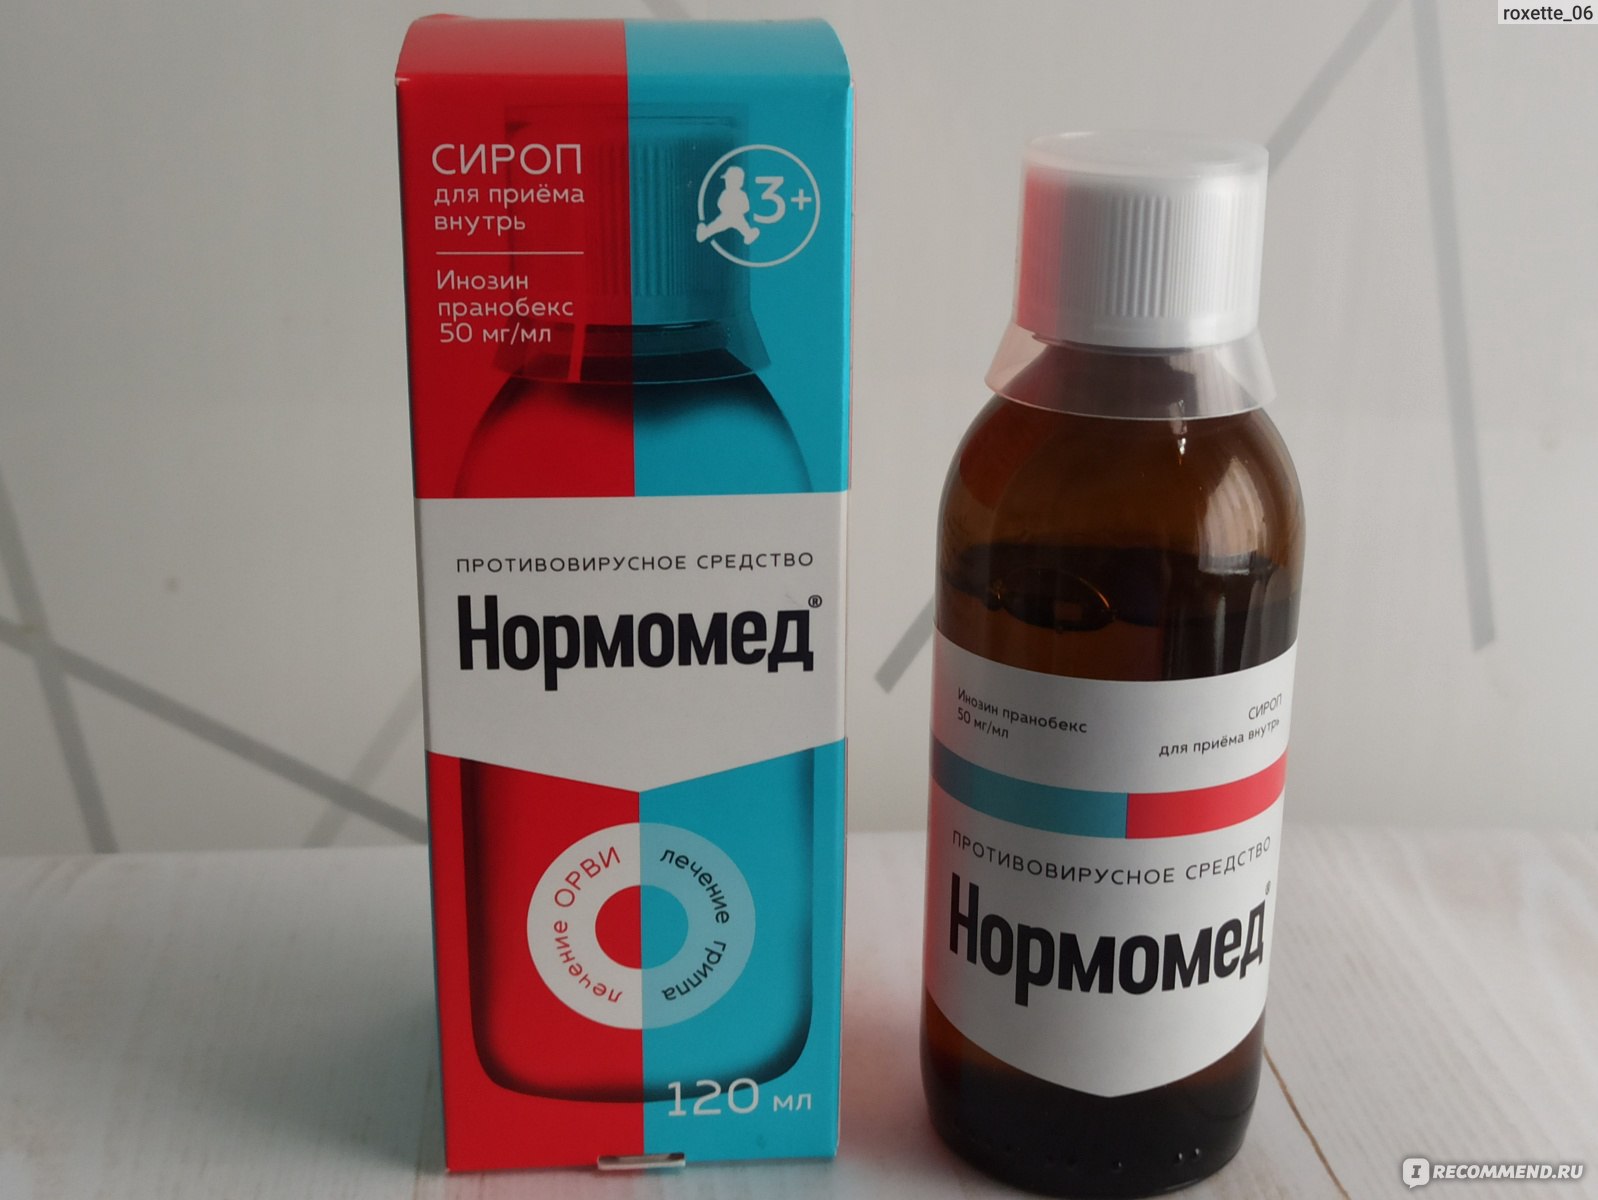 Нормомед сироп 50 мг/мл, 240 мл: инструкция по применению, состав, аналоги, отзывы и цена